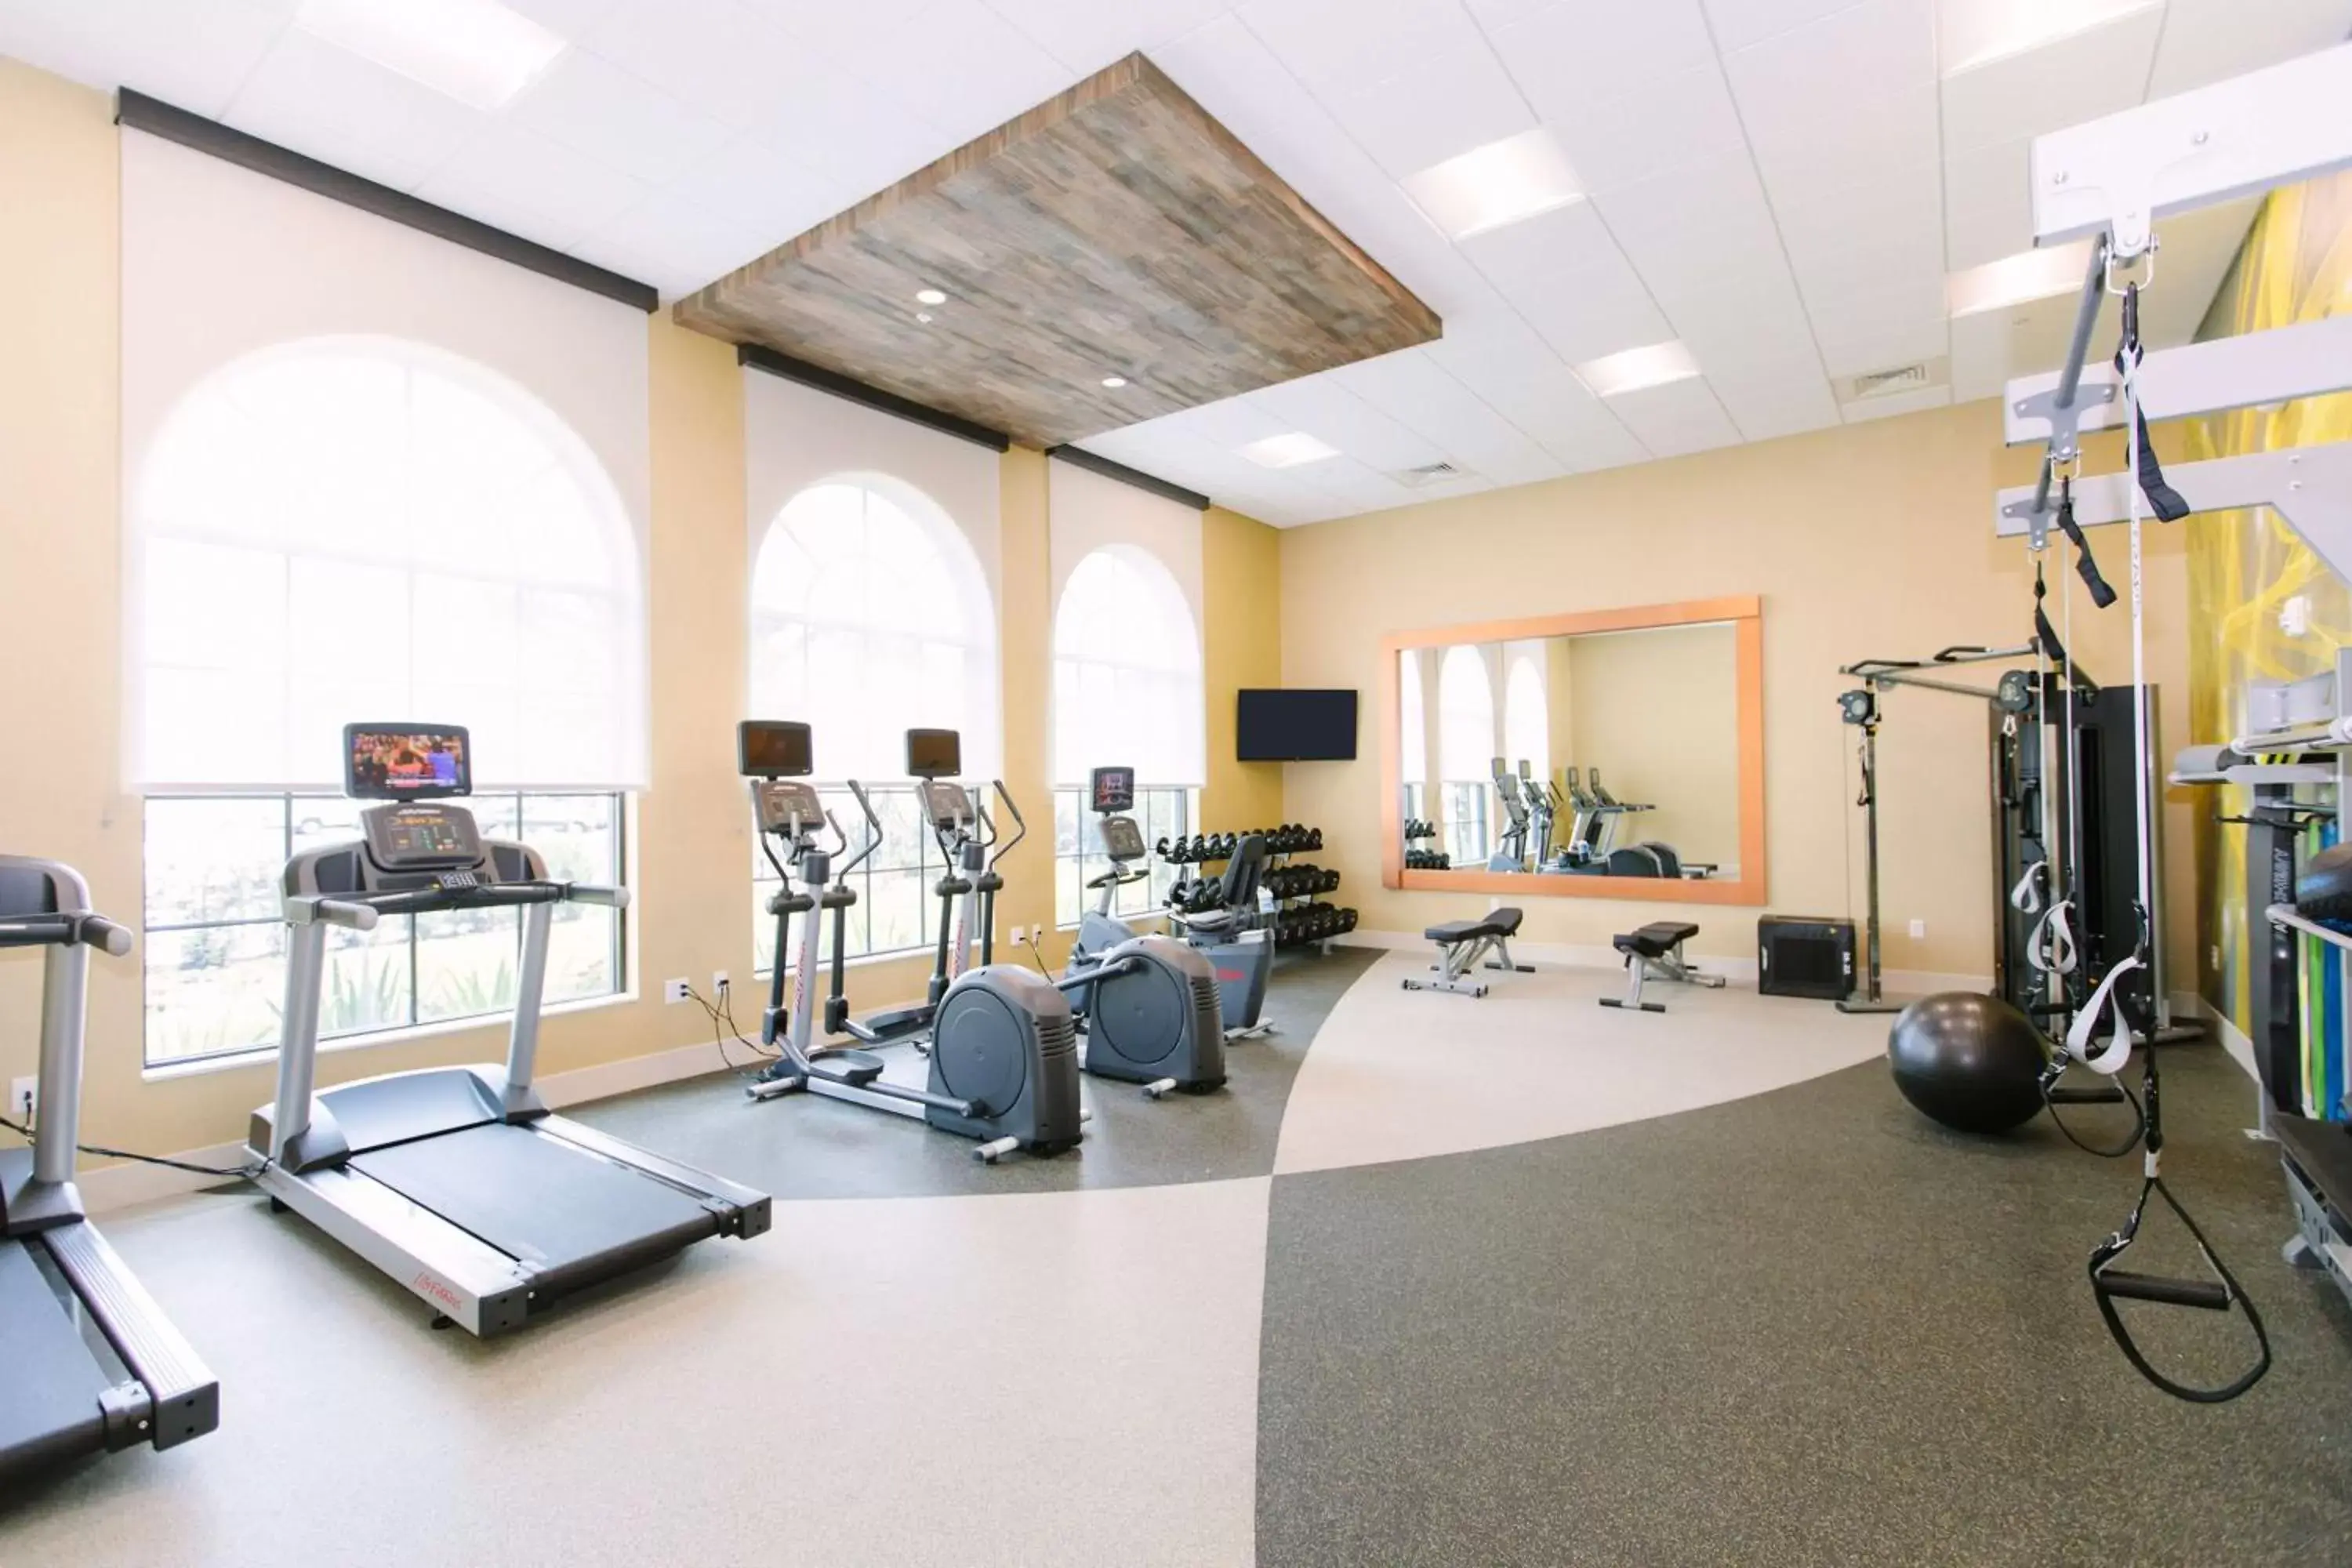 Fitness centre/facilities, Fitness Center/Facilities in Hilton Garden Inn Winter Park, FL